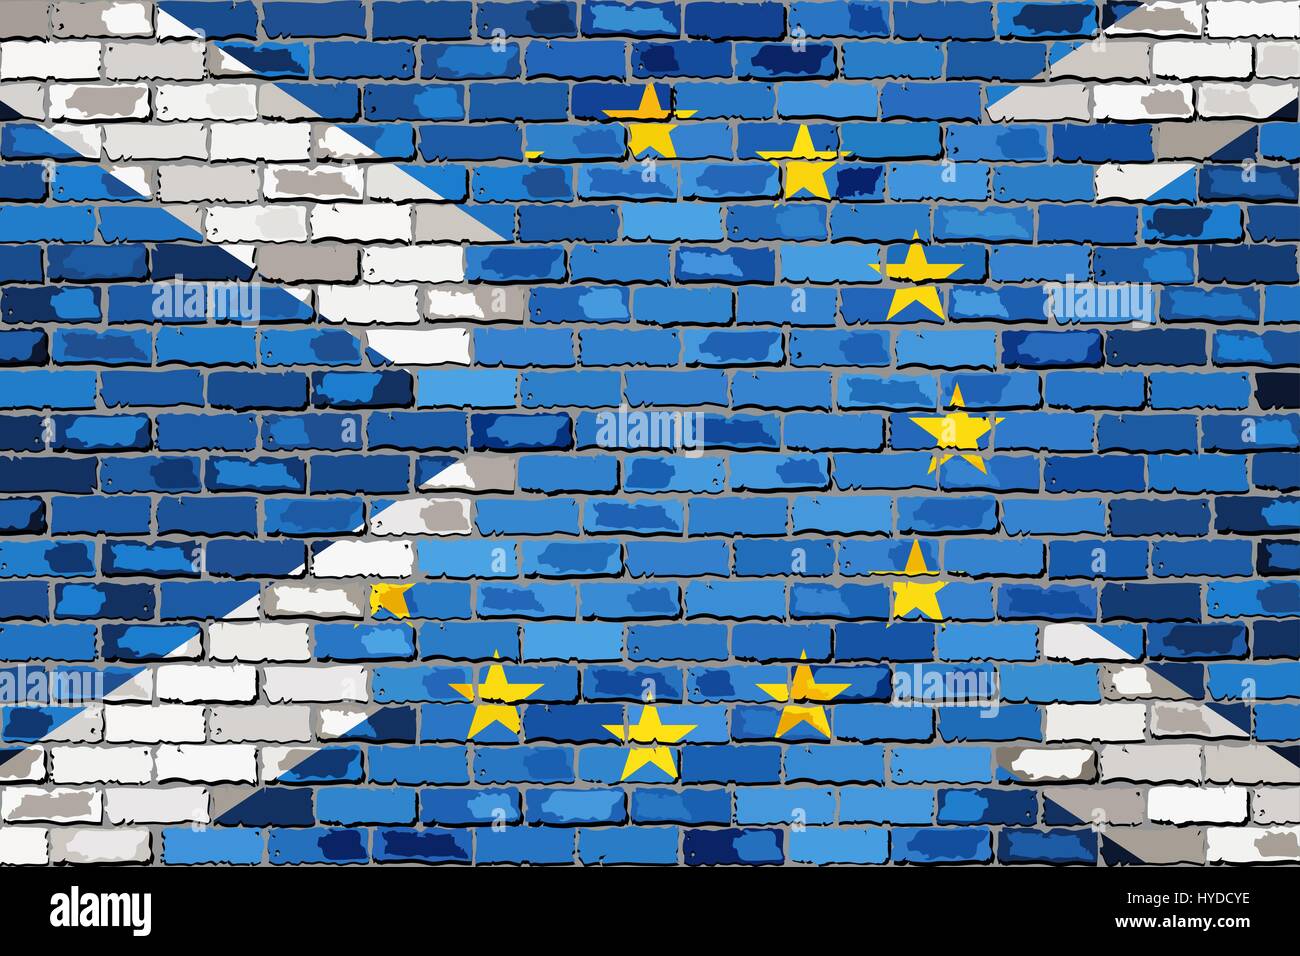 Muro di mattoni Unione europea e Scozia flags - Illustrazione, Abstract grunge UE e bandiere scozzese Illustrazione Vettoriale